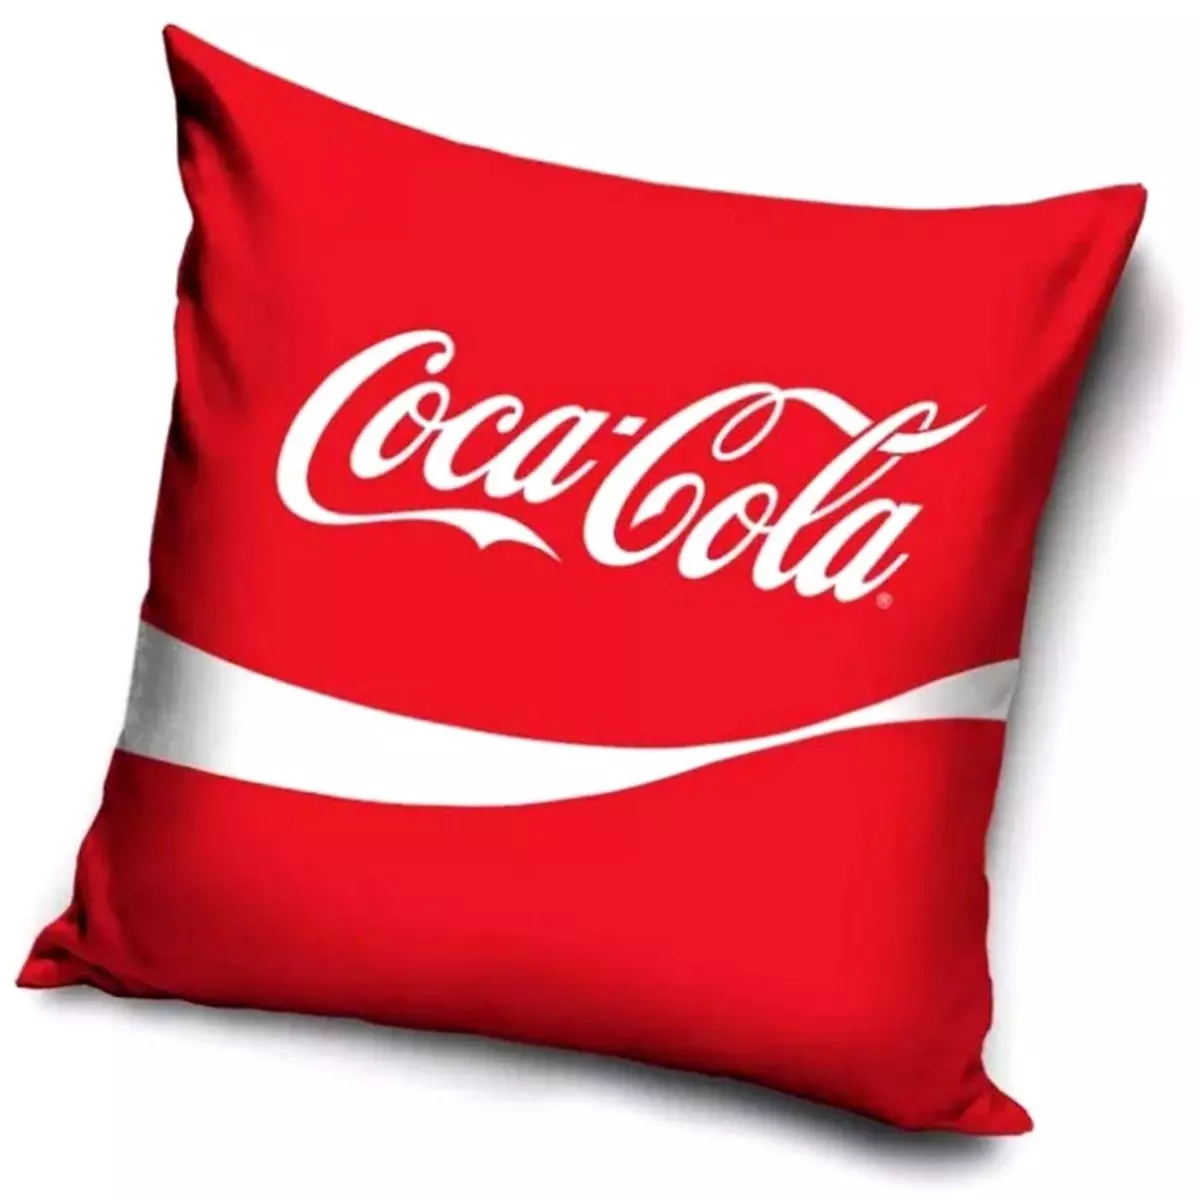  Taie d'oreiller Coca Cola 40 x 40 cm canape Coussin boisson